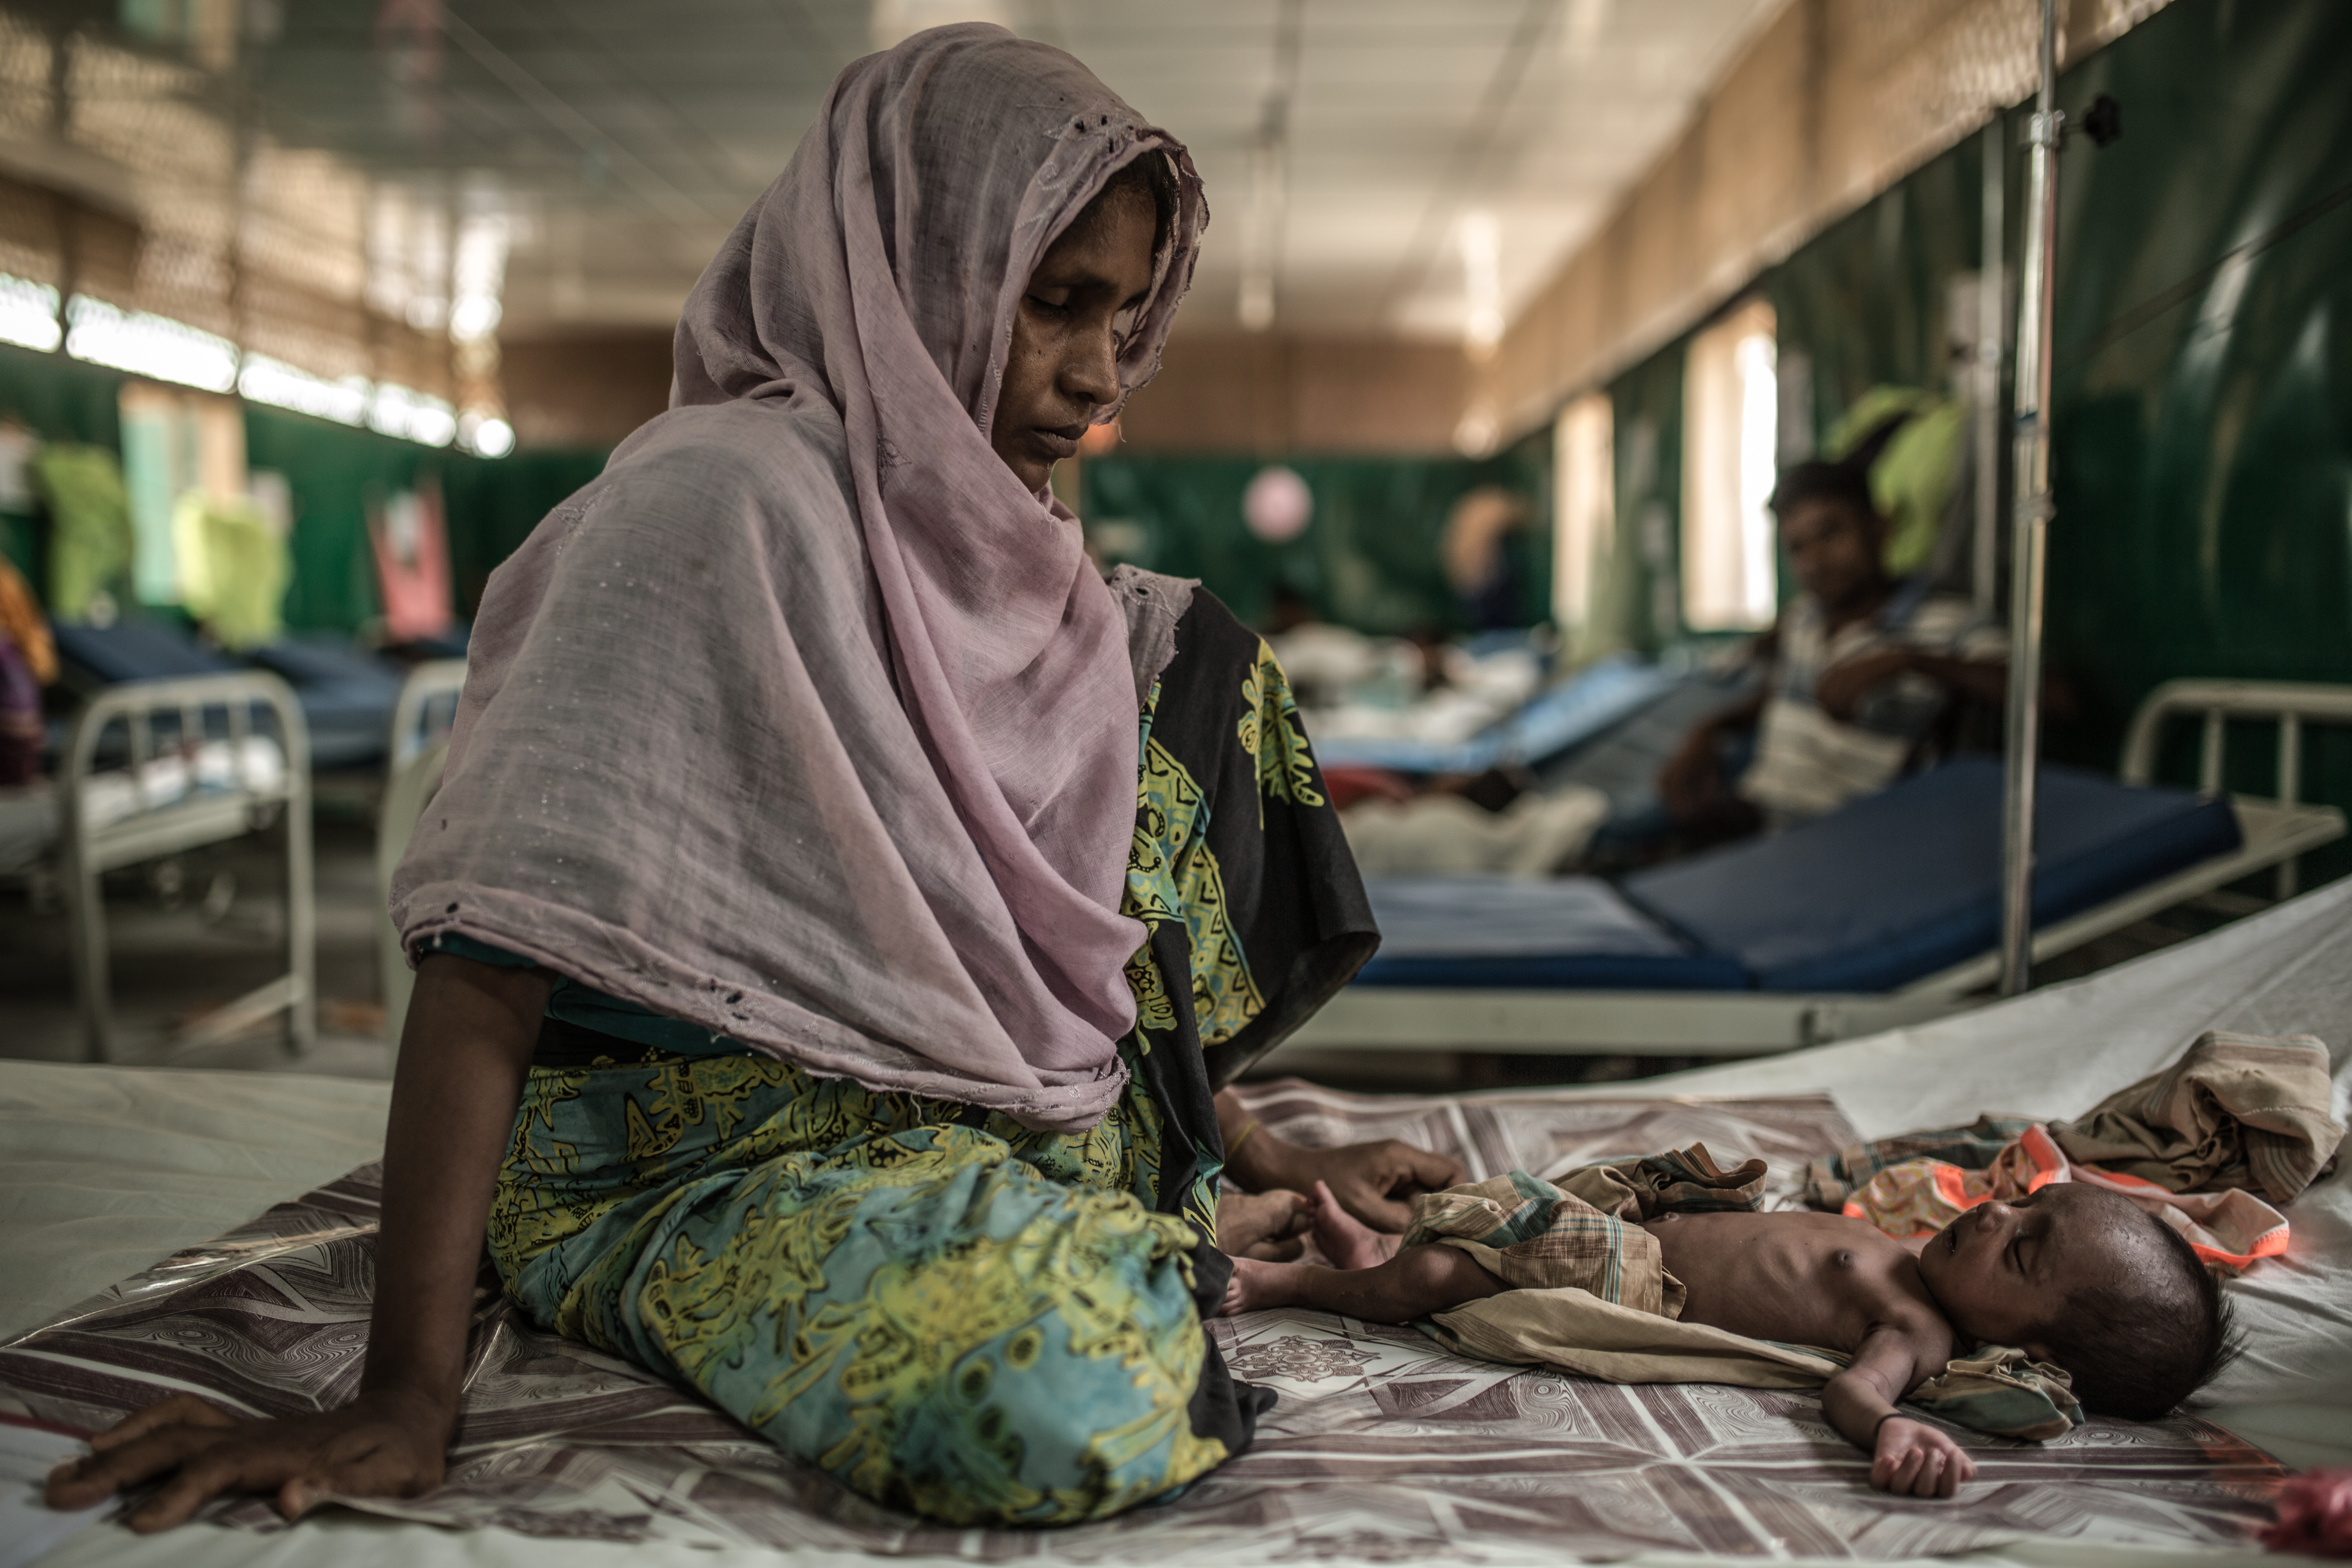 Rozia et son fils de deux ans, Zubair, sont à l'hôpital MSF de Goyalmara. De nombreux enfants admis à l'hôpital ont contracté des infections résultant d'accouchements peu hygiéniques et des conditions de vie insalubres dans le camp au cours de leurs premiers jours de vie. © Pablo Tosco/Angular, avril 2018